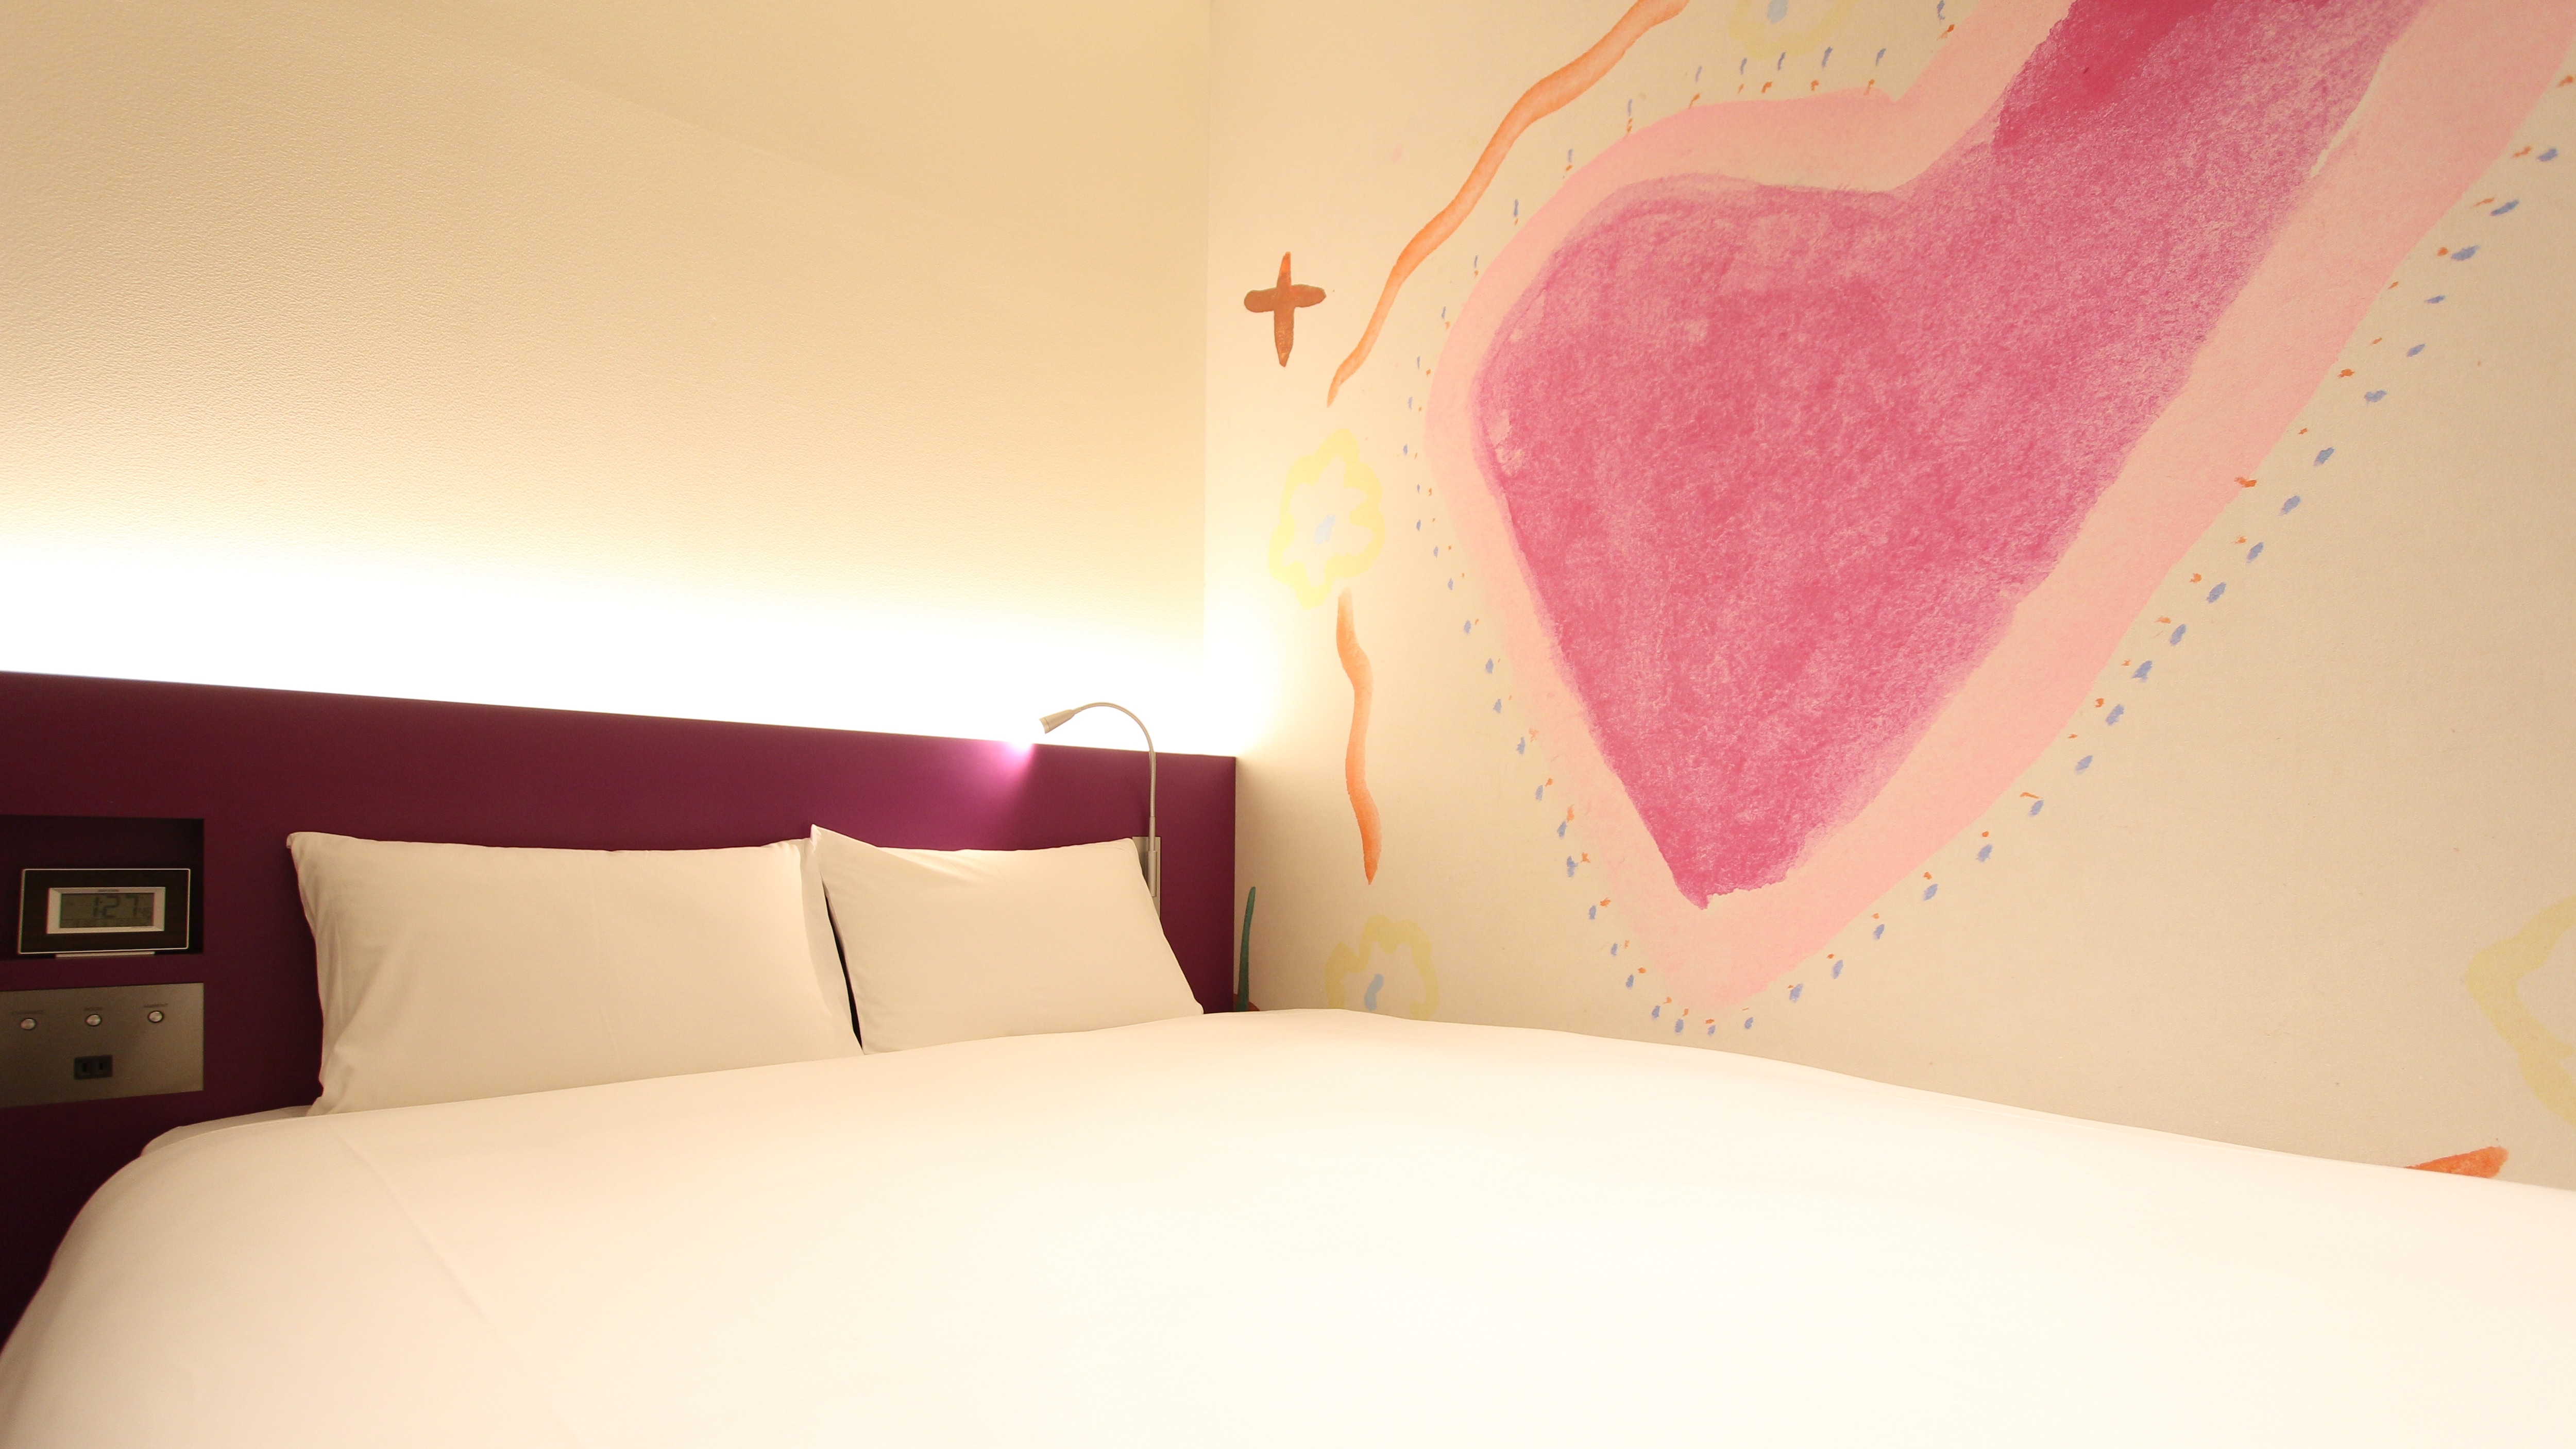 ปานกลาง เตียงใหญ่ * การออกแบบงานศิลปะแตกต่างกันไปขึ้นอยู่กับห้องพัก